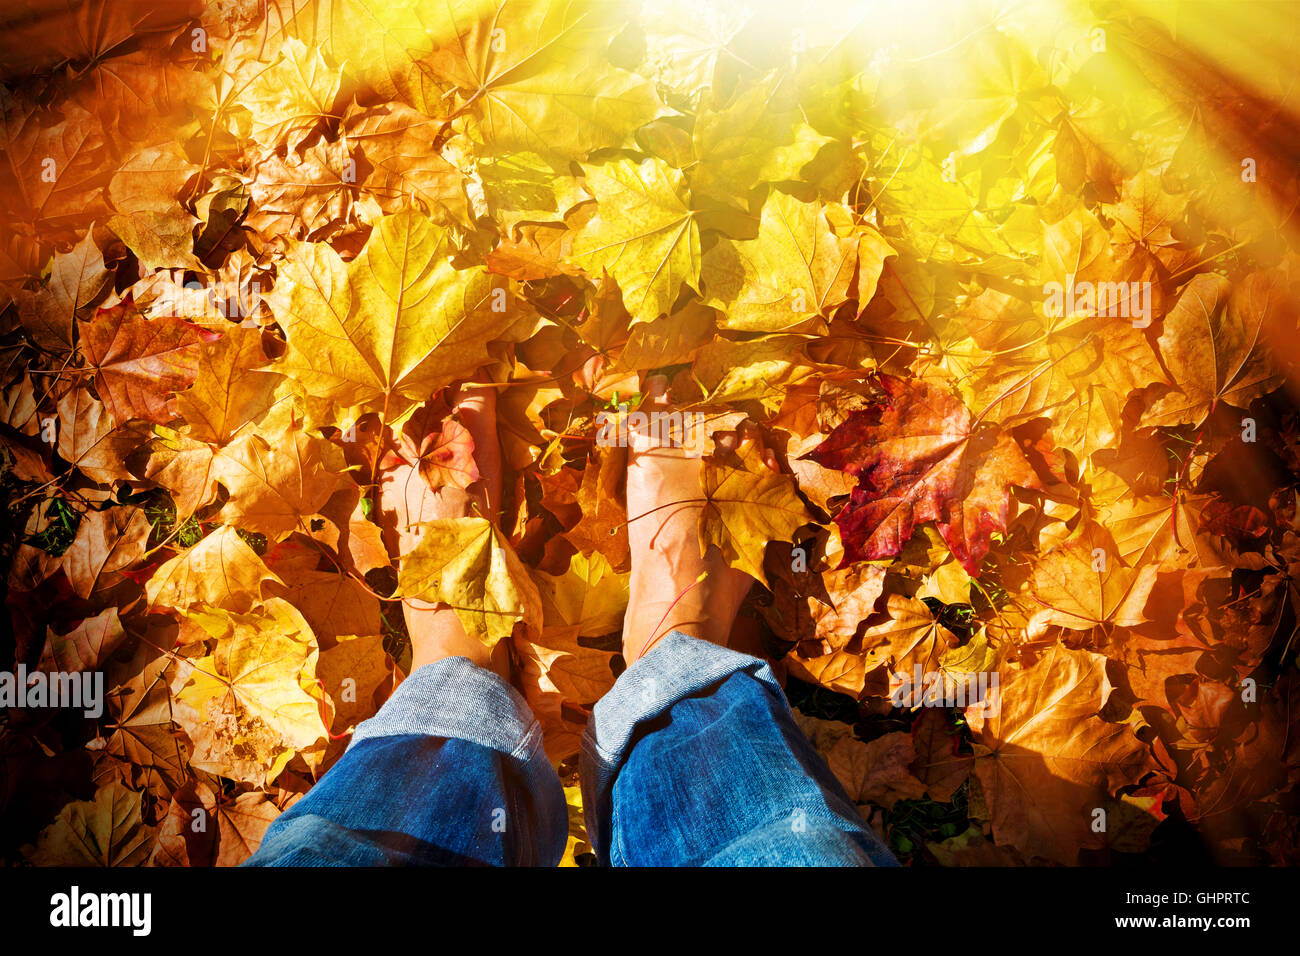 Homme debout pieds nus dans les feuilles d'automne Banque D'Images